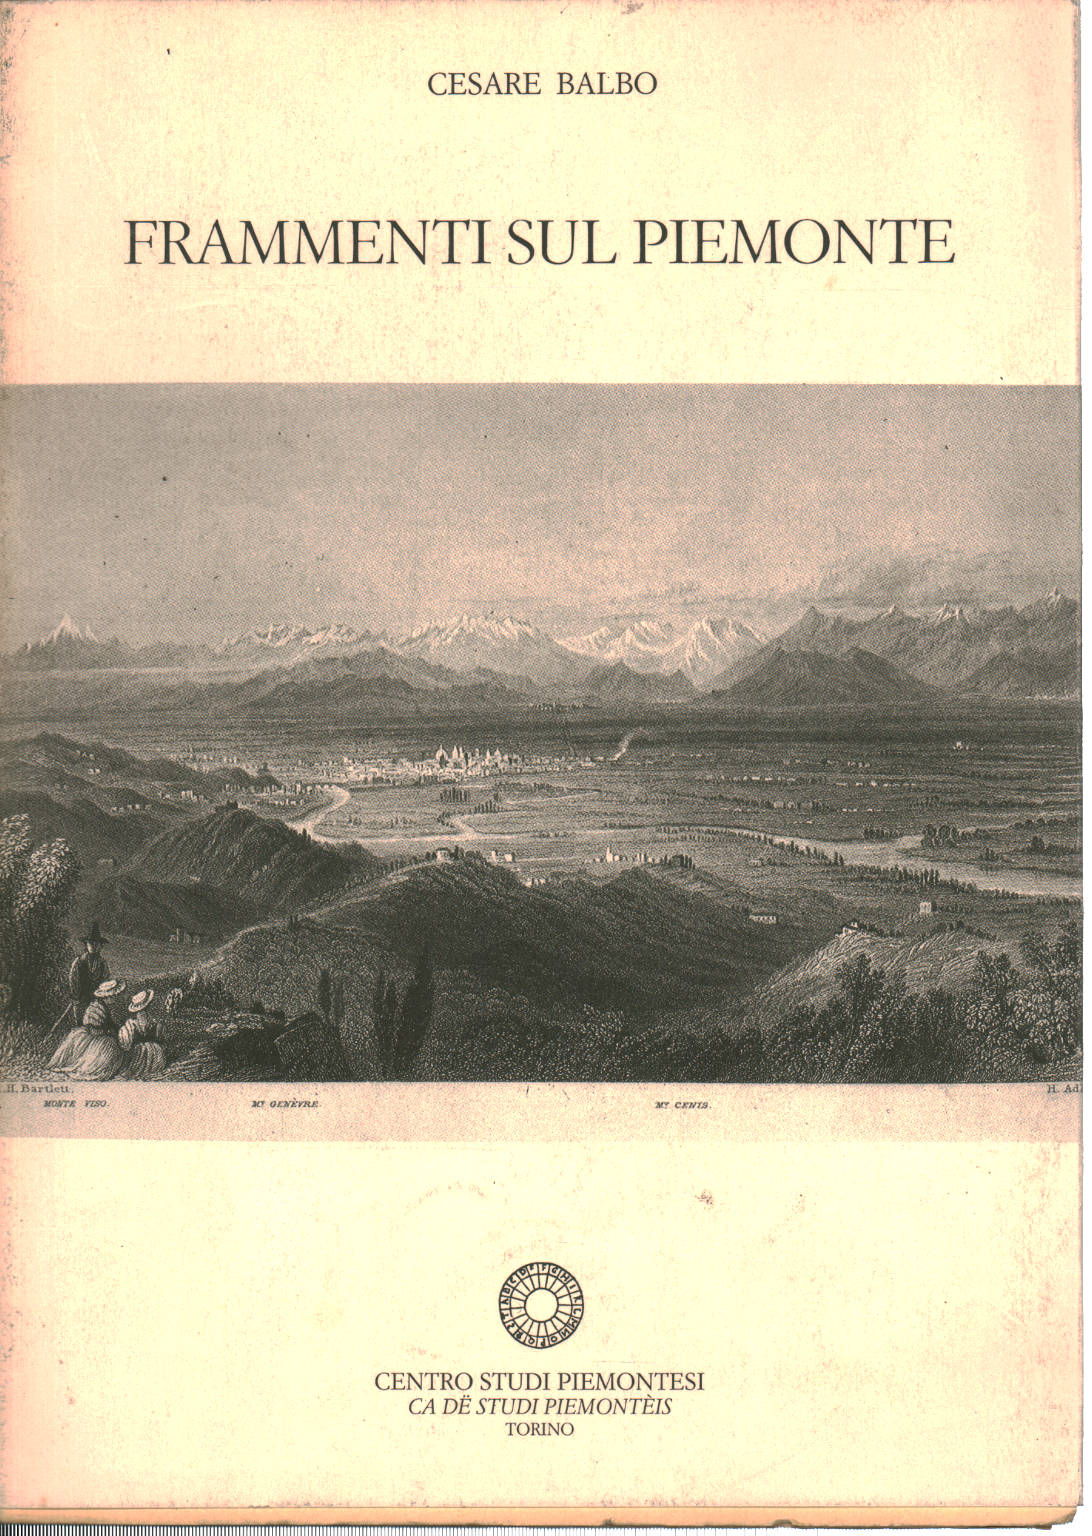 Fragmente auf Piemont, Cesare Balbo